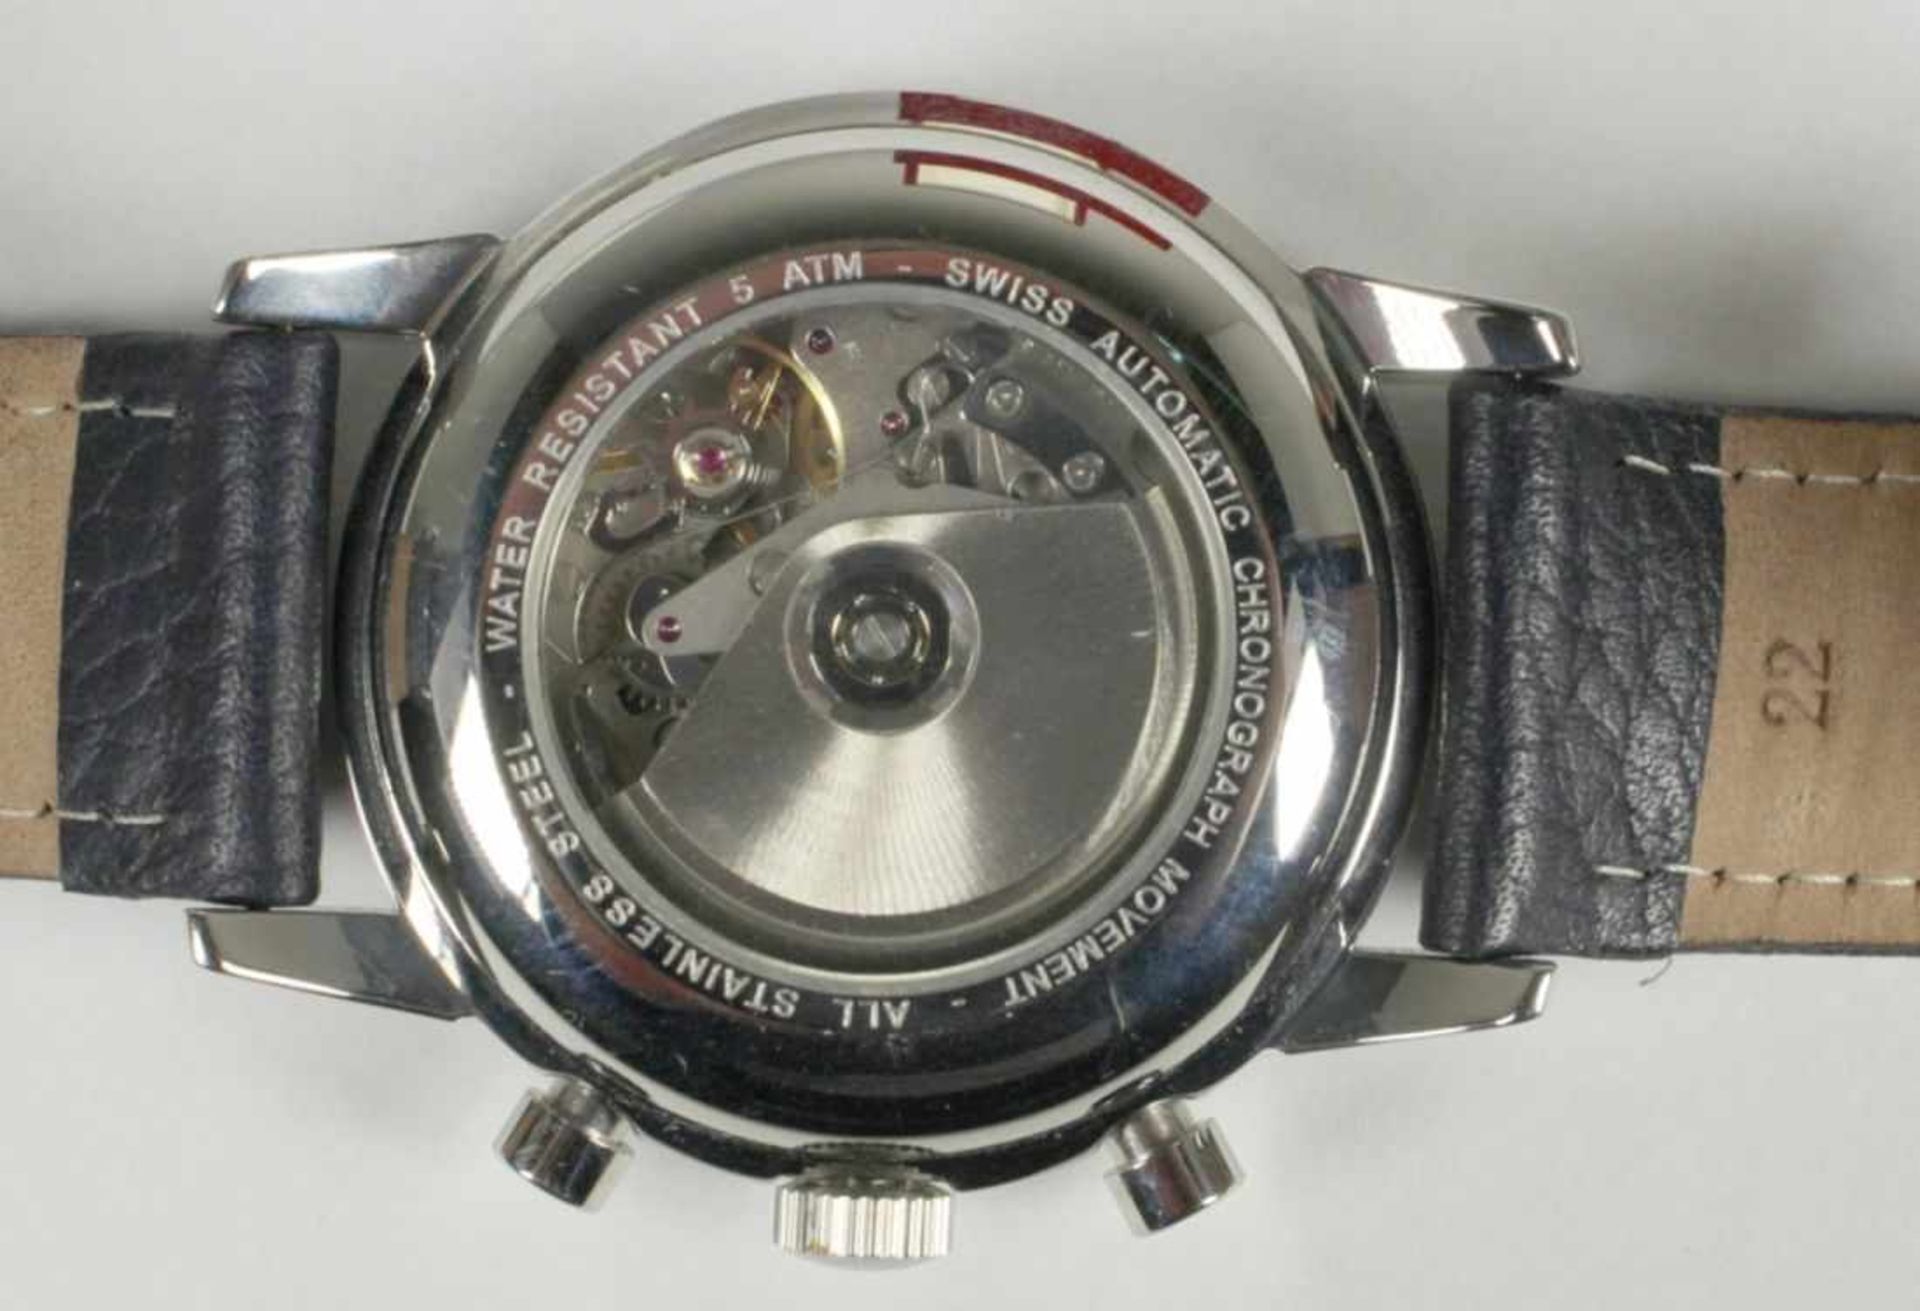 Herren-Armbanduhr, Bosch, neuzeitlich, Chronograph, Automatic, Datum bei der "3", - Bild 2 aus 2